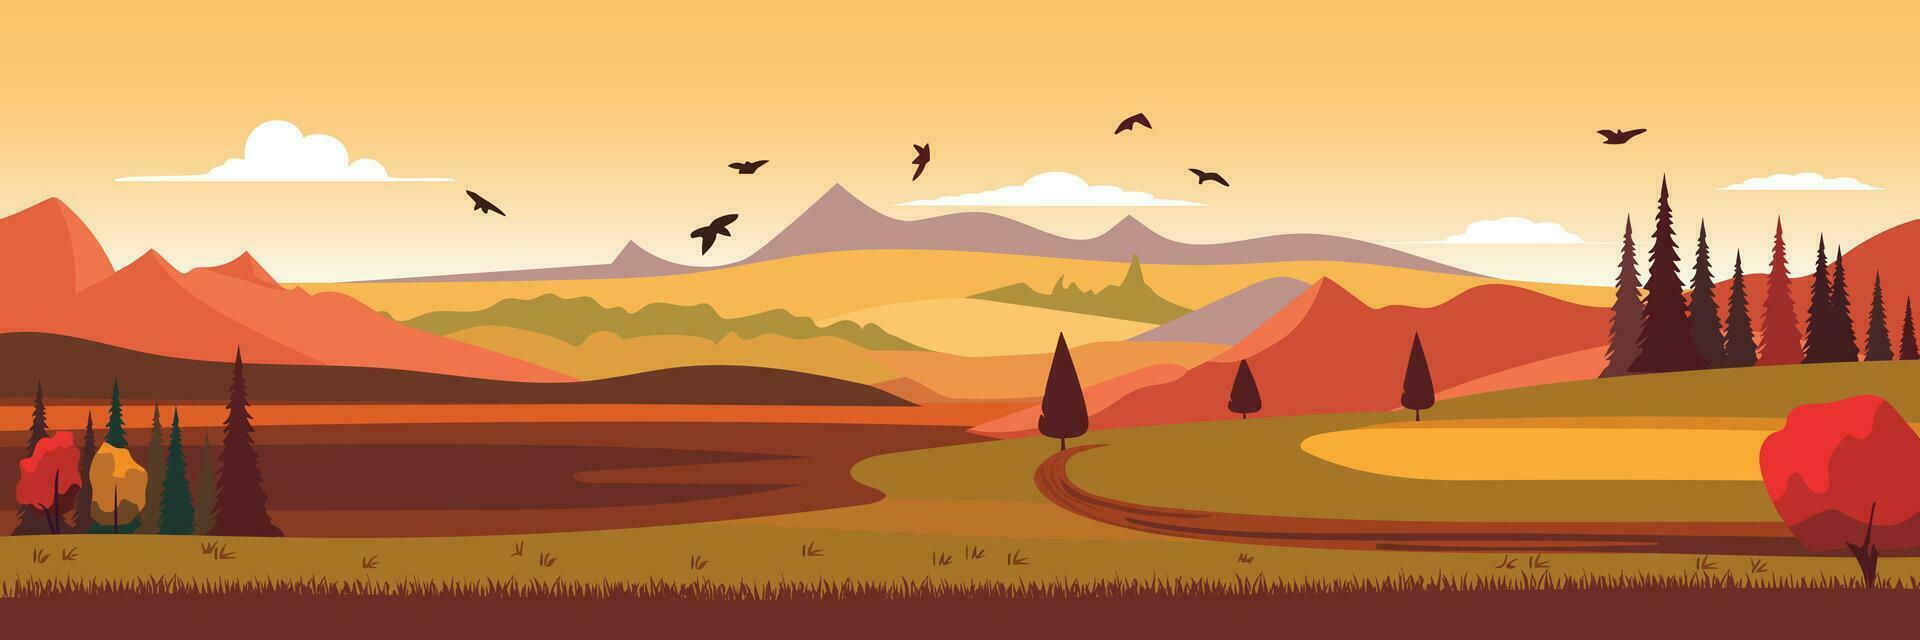 dessin animé illustration de le l'automne rural paysage. tomber la nature voir. vecteur illustration.